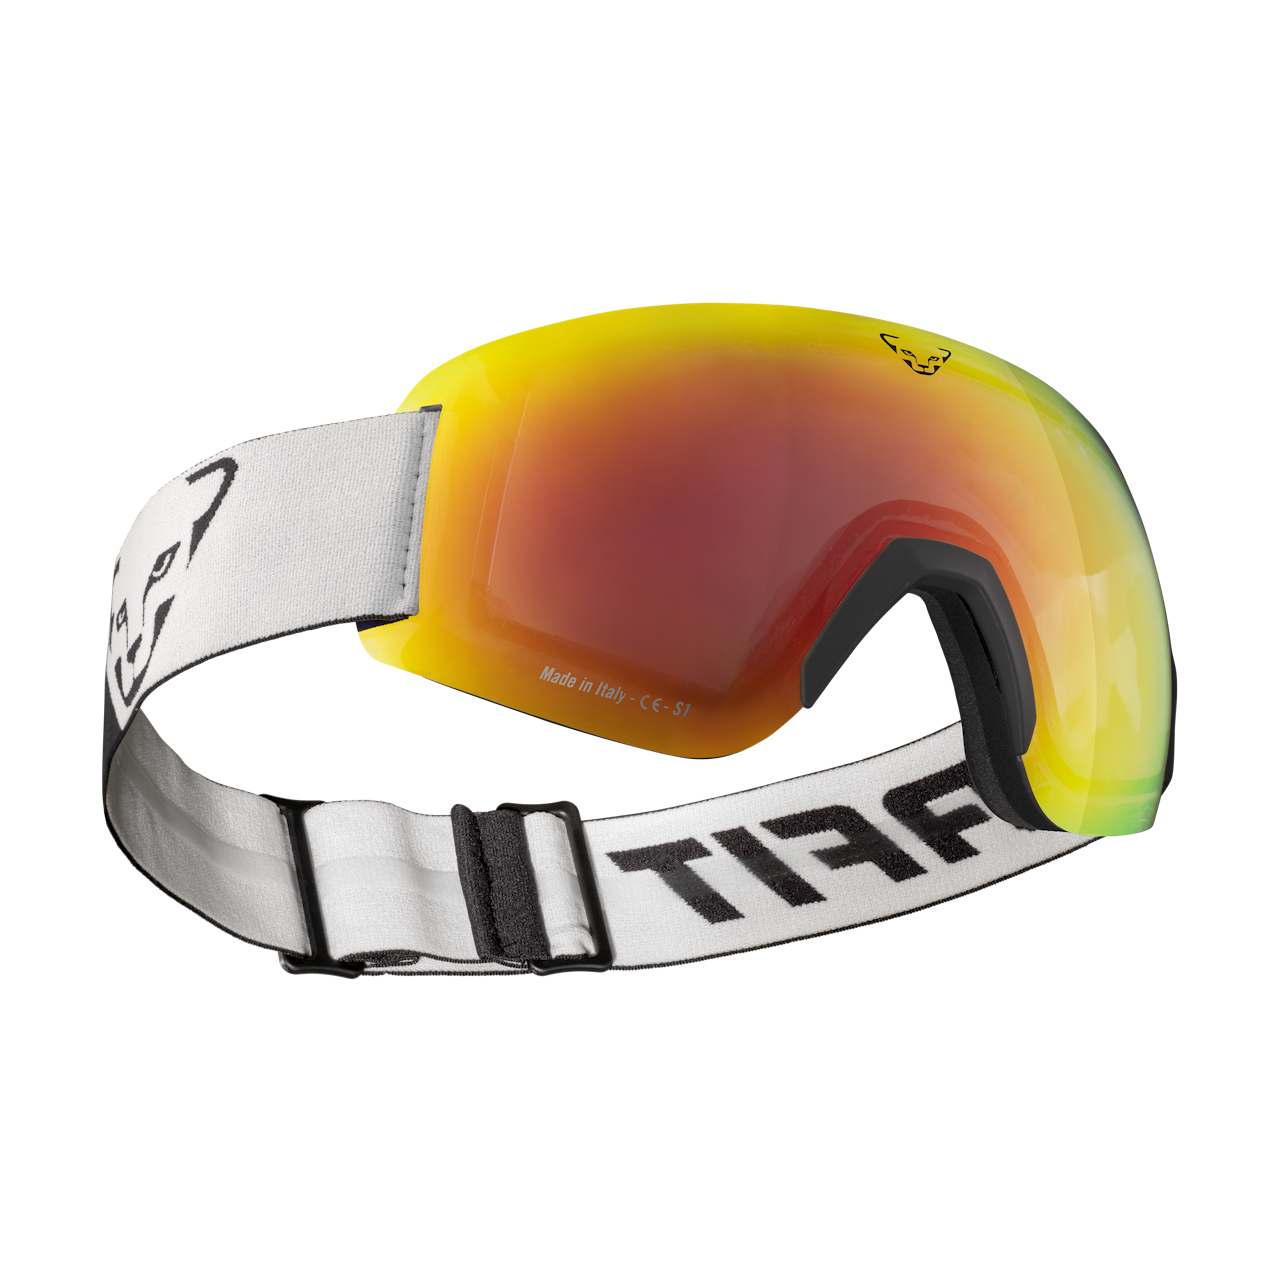 Masque pour casque de ski Swiss - Mc Shirt (Suisse)